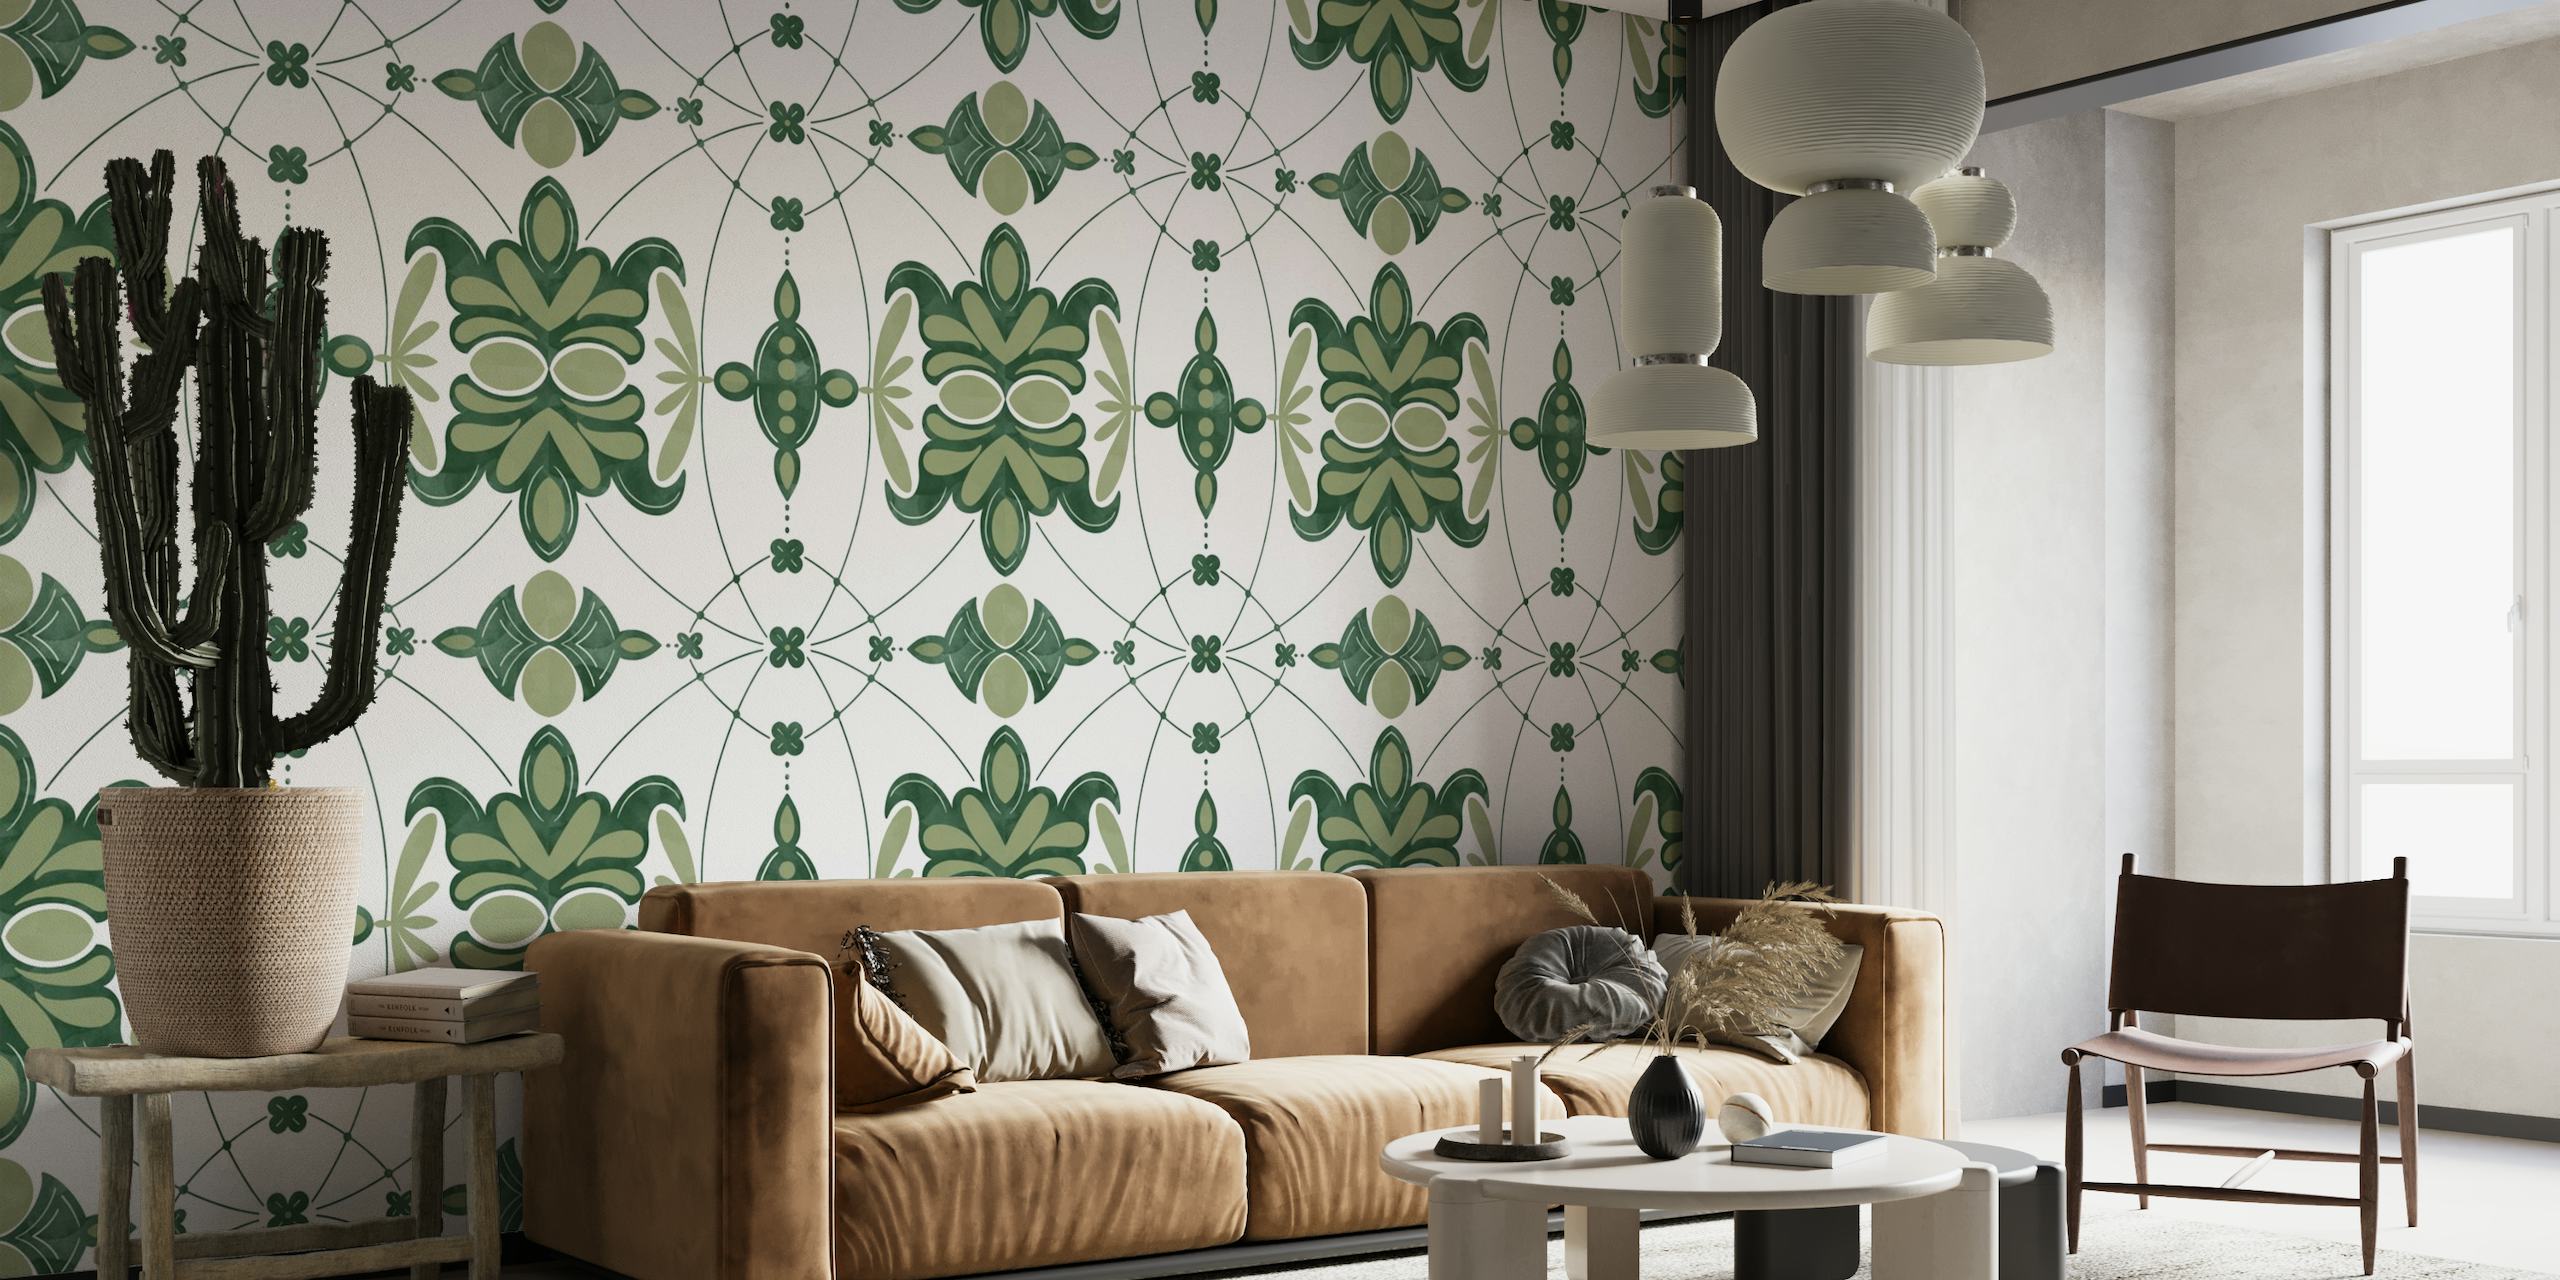 Fotomural vinílico de parede com padrão de azulejos naturais intrincados em estilo vintage com motivos verdes e esbranquiçados